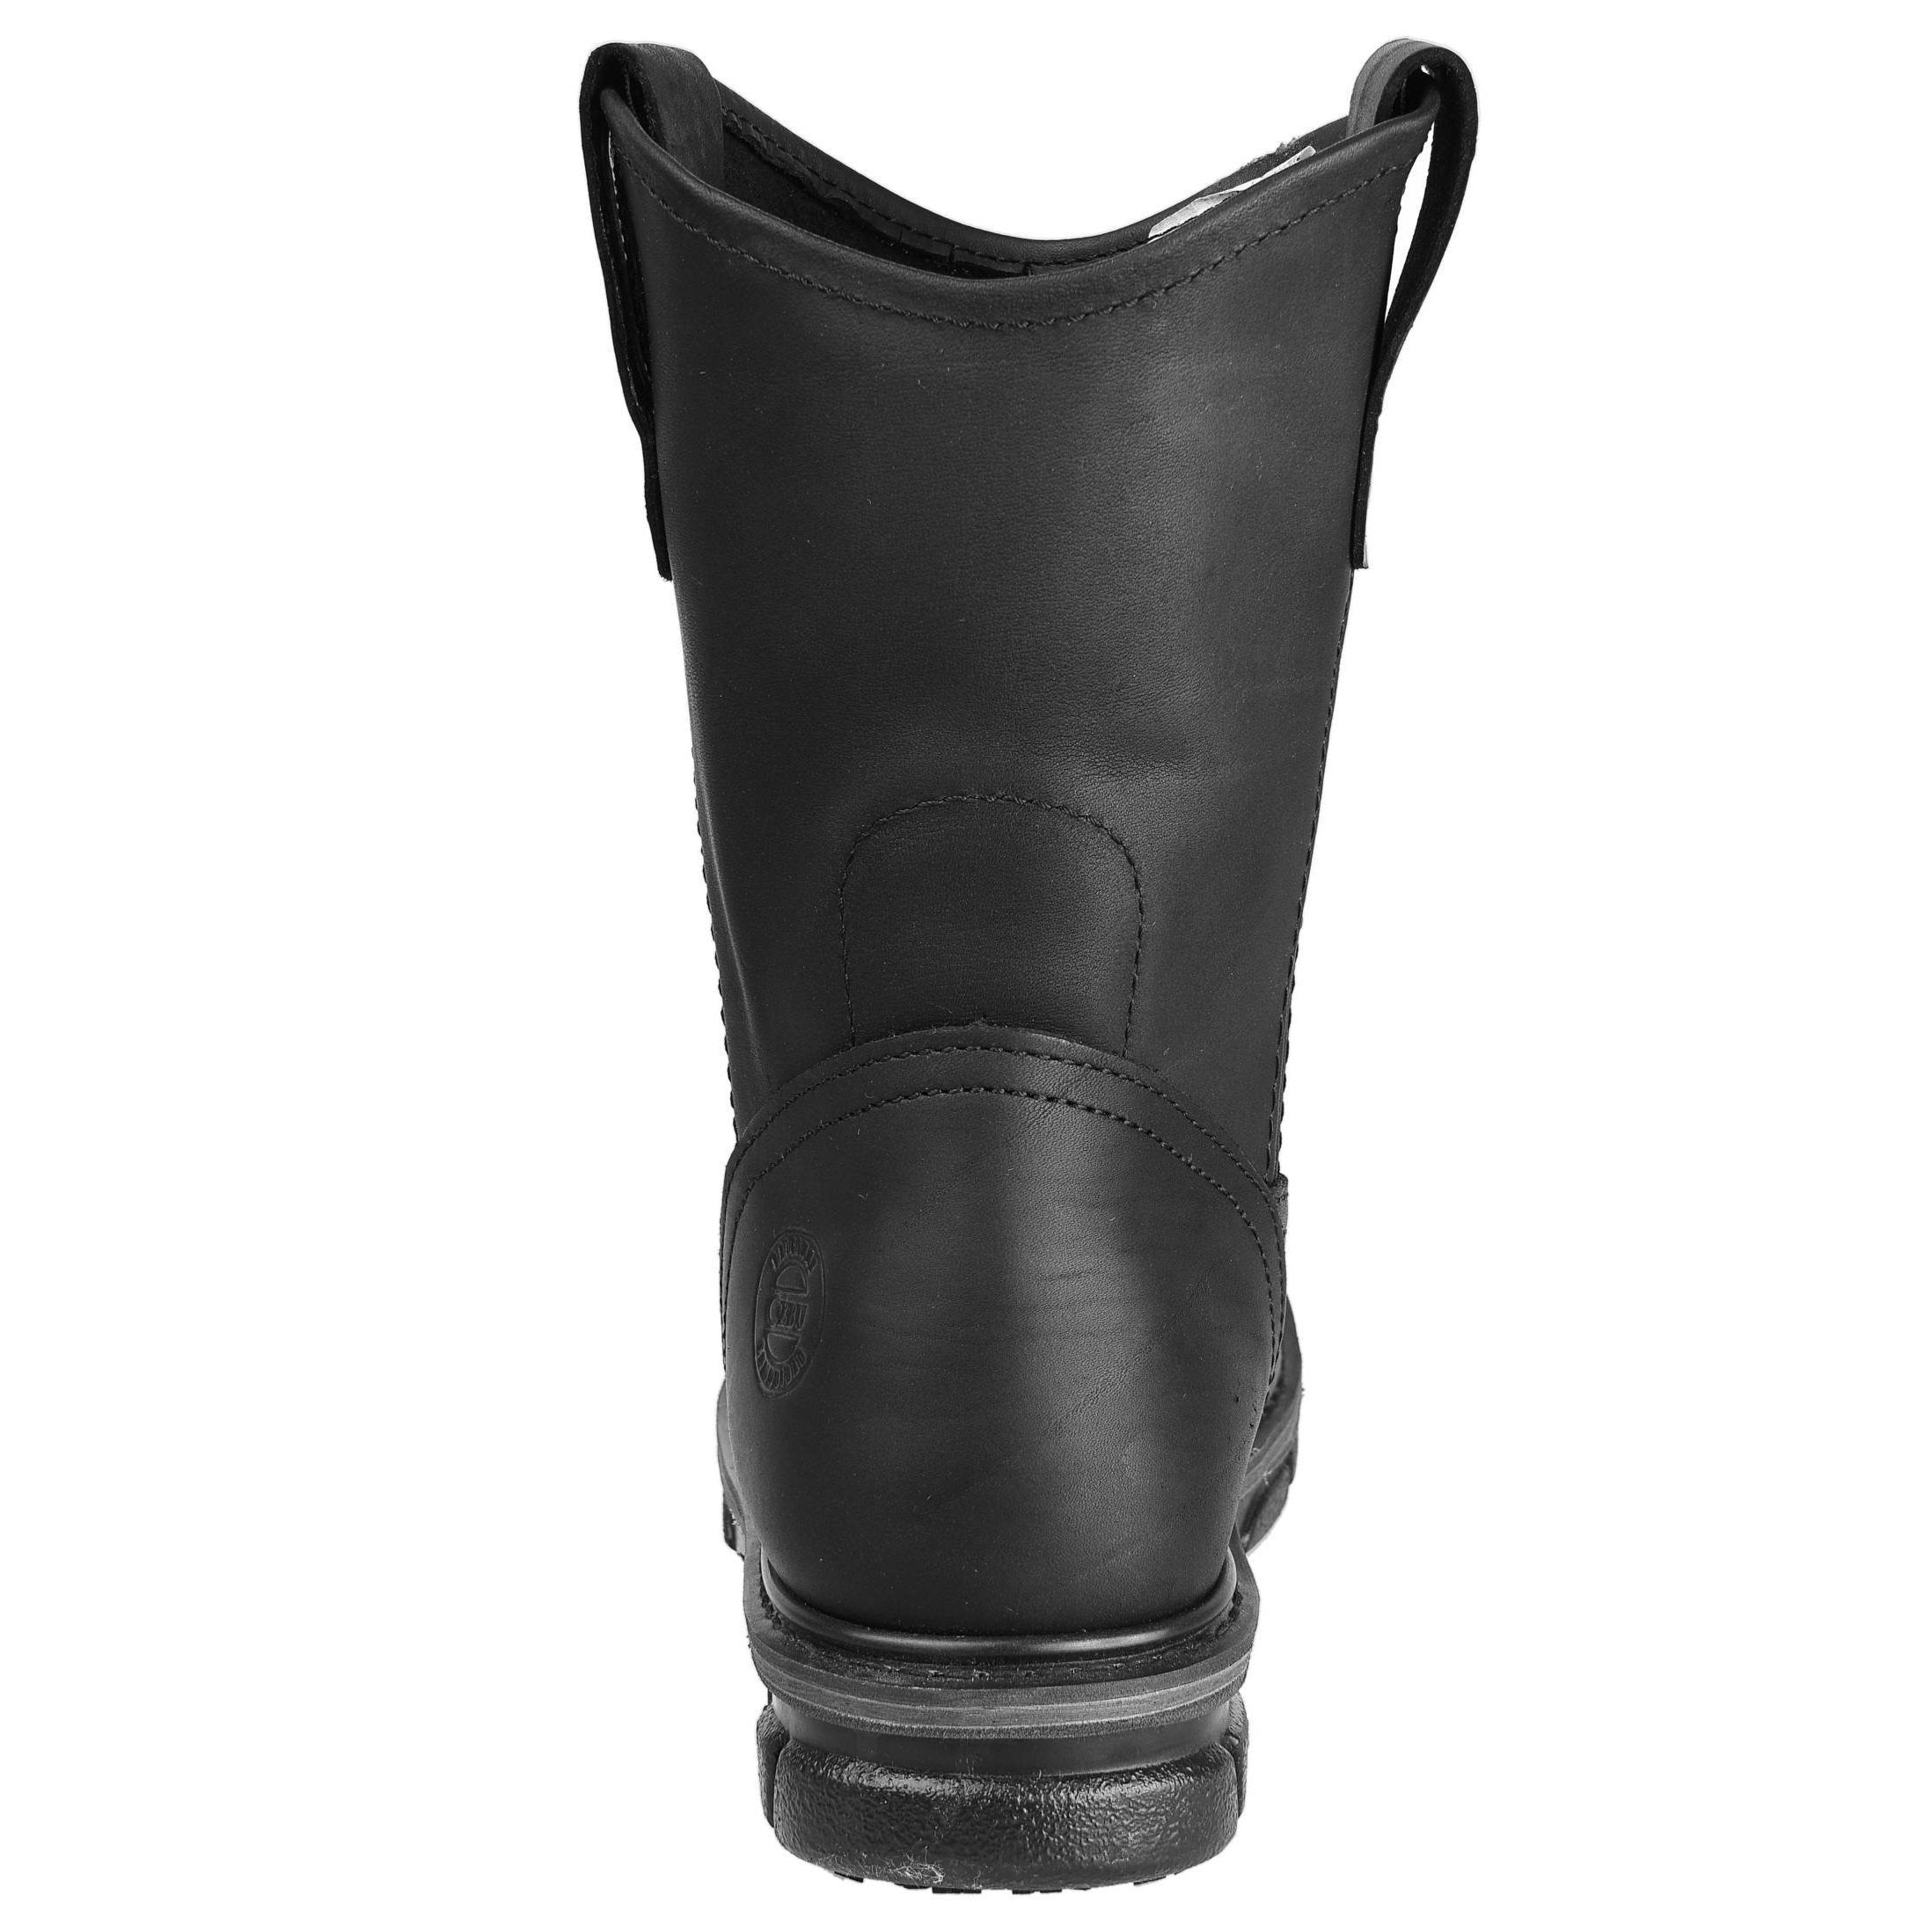 Men's Work Boots - Non Slip - Black Work Boots - Cebu - Pull On Work Boots - Black Wellington Work Boots